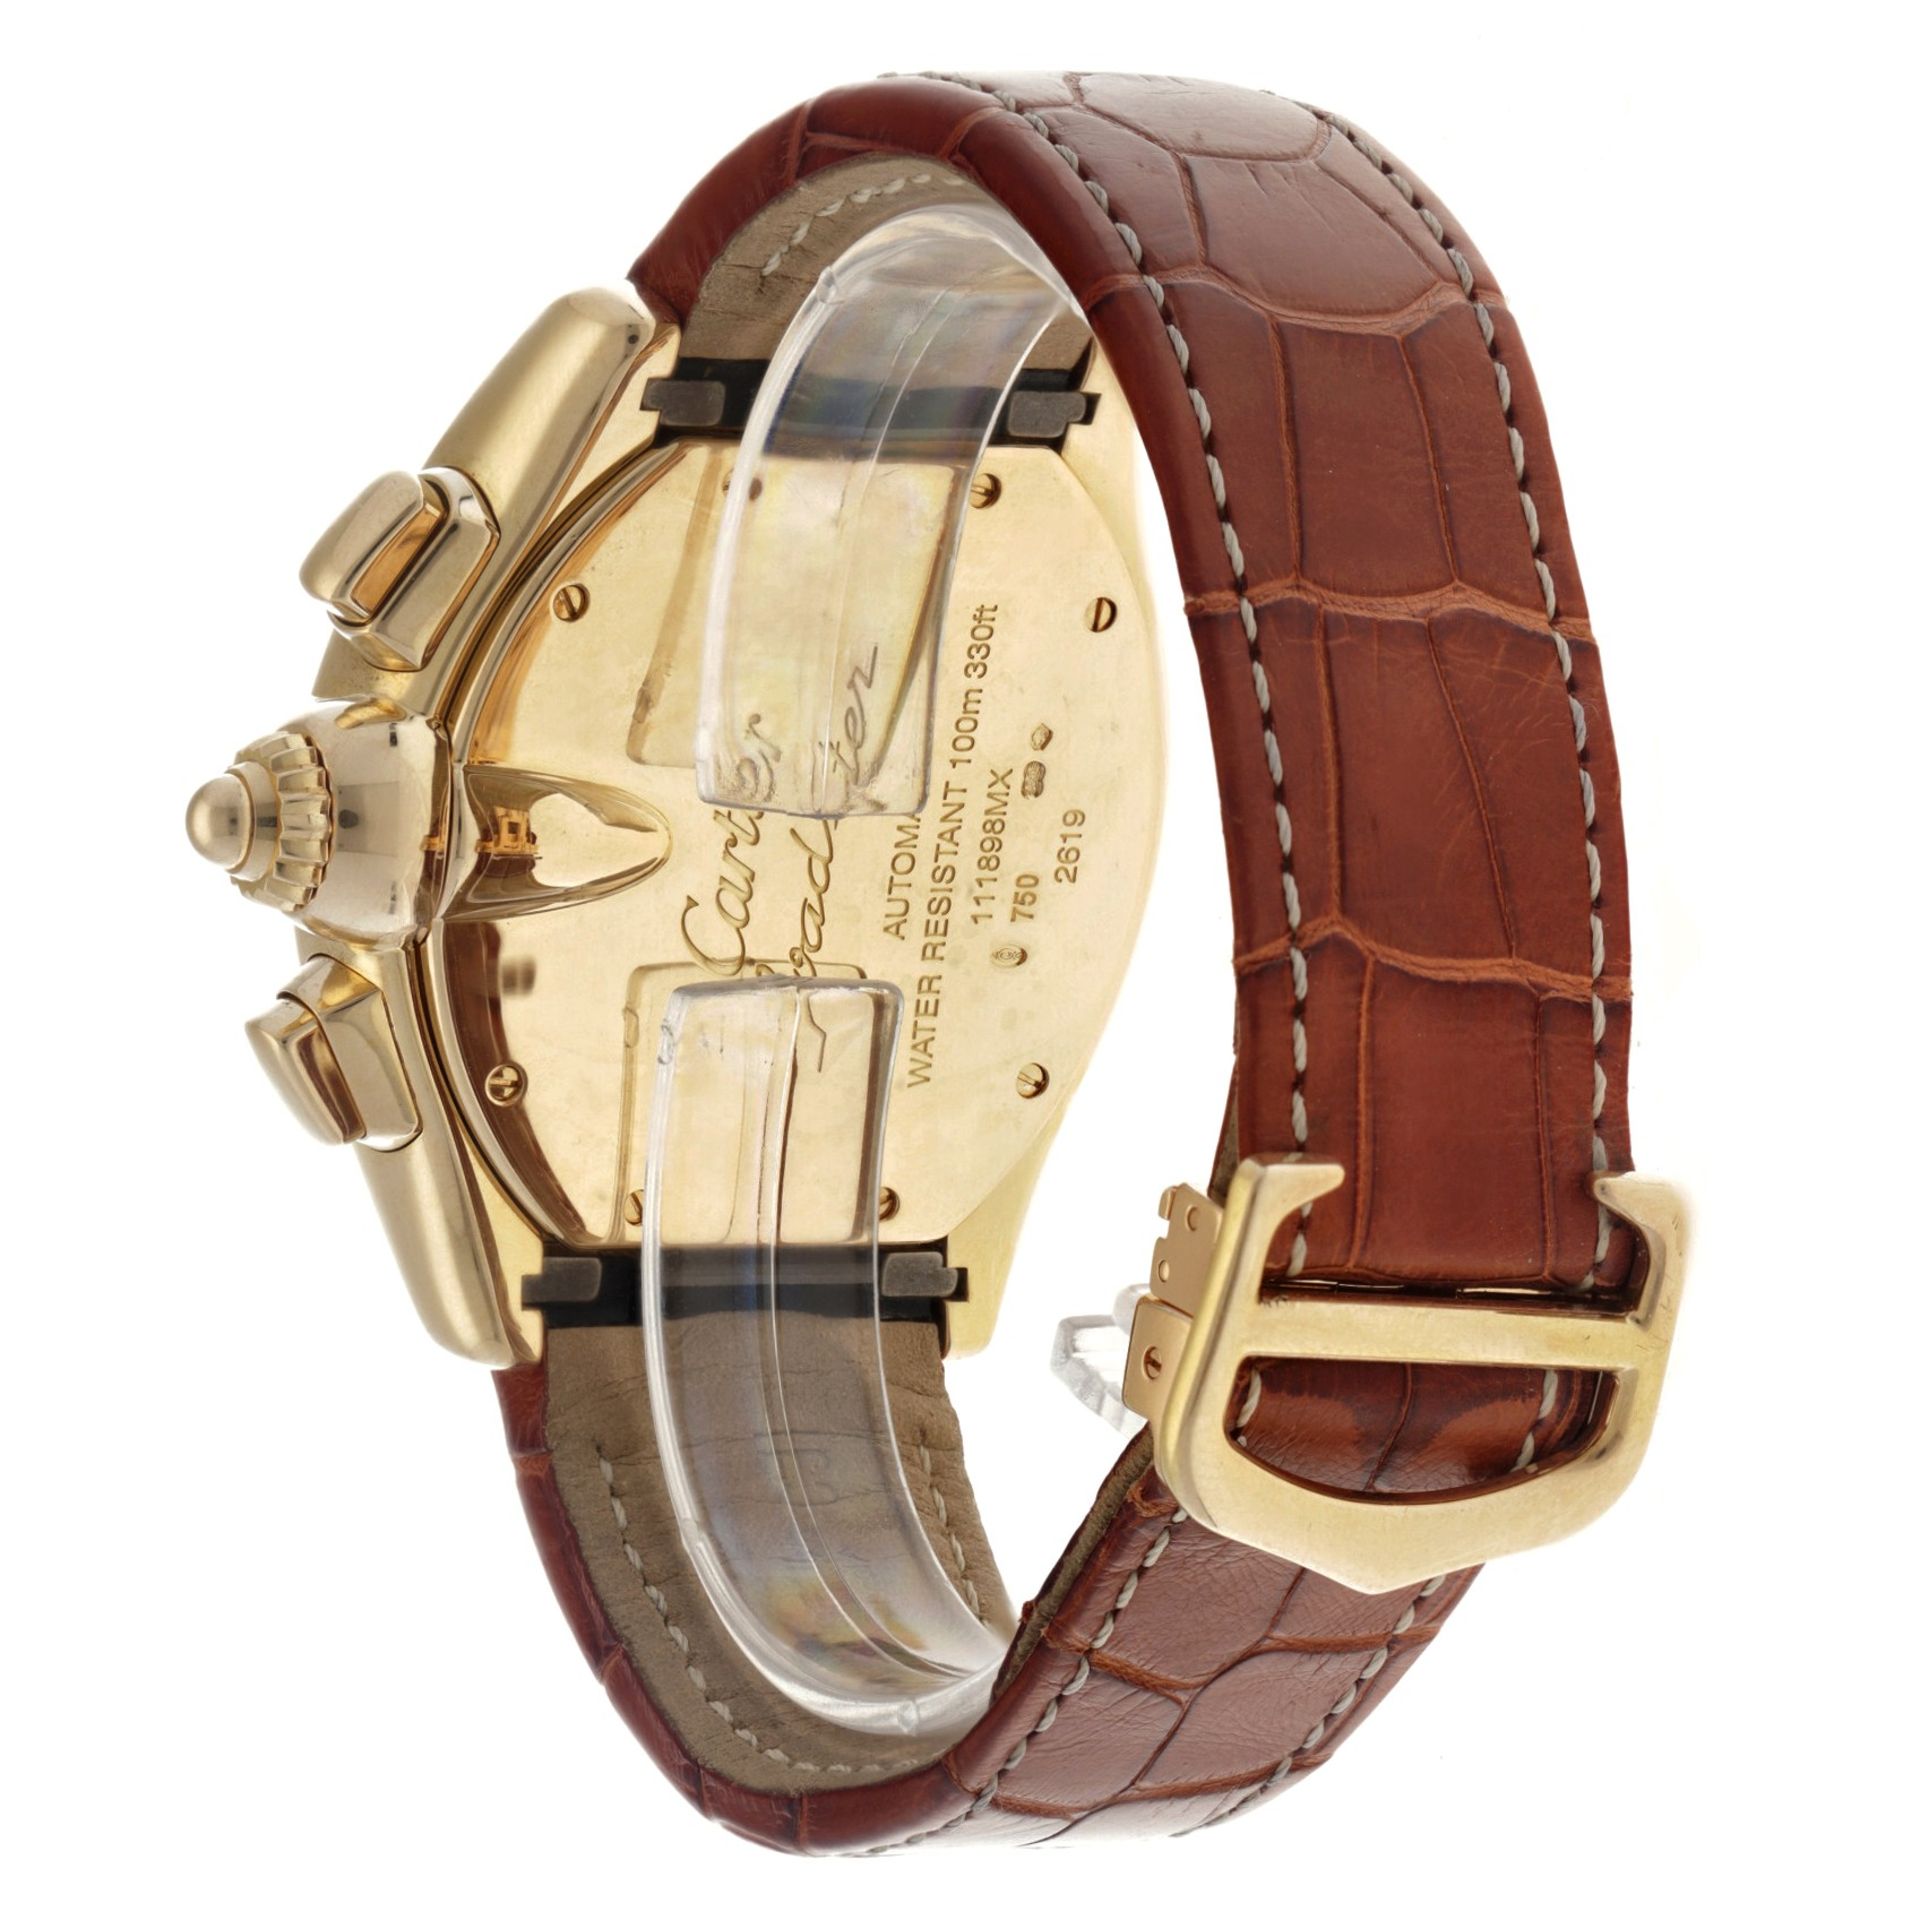 Cartier Roadster 2619 - Men's watch. - Image 3 of 6